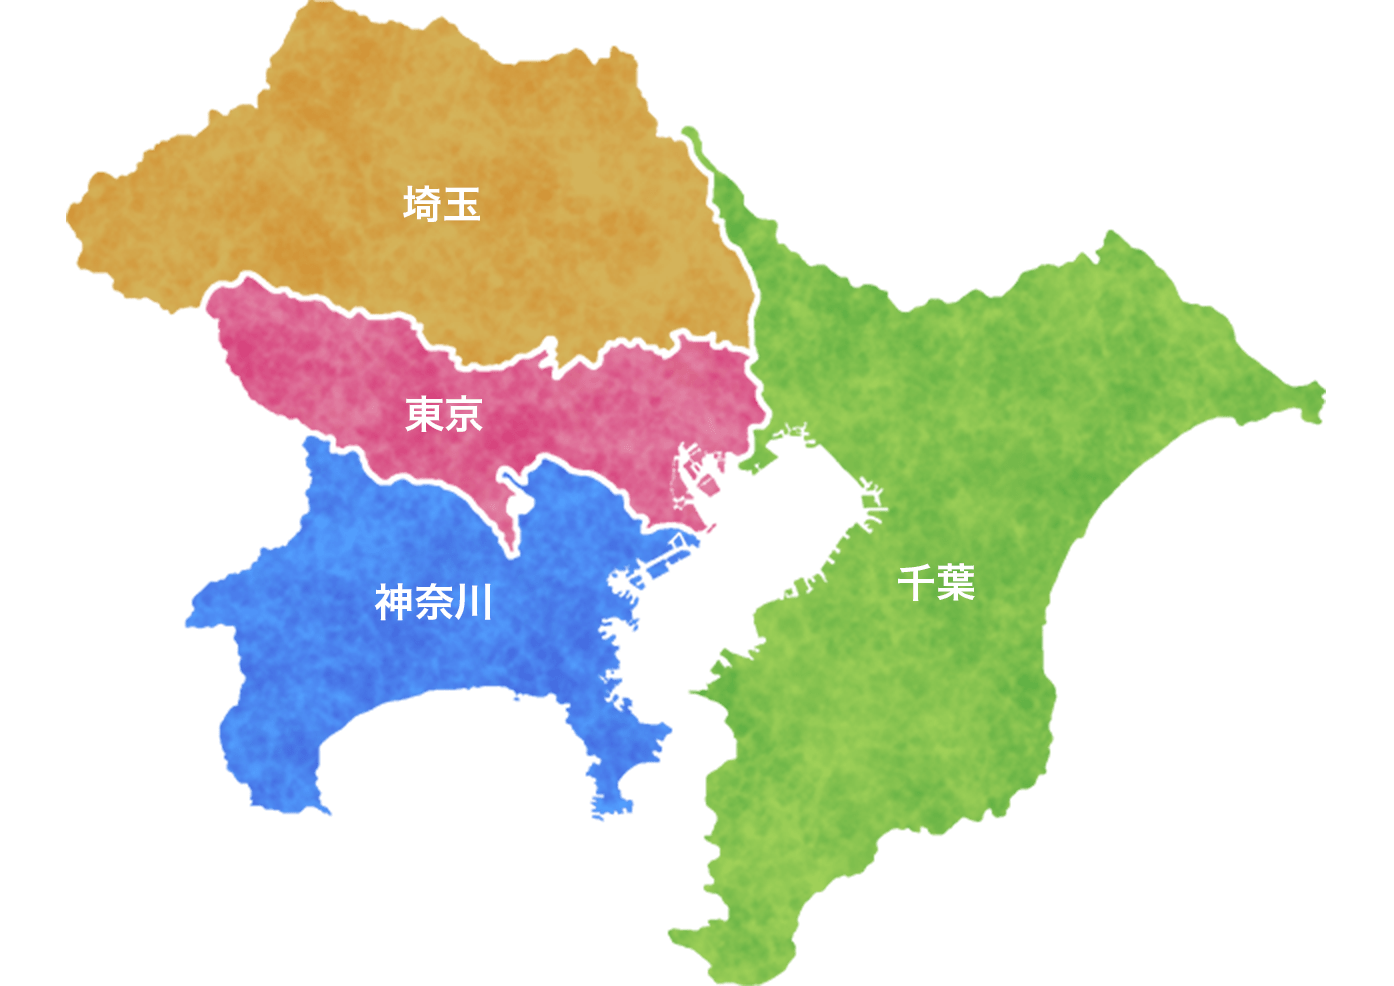 対応エリア(東京・千葉・埼玉・神奈川)